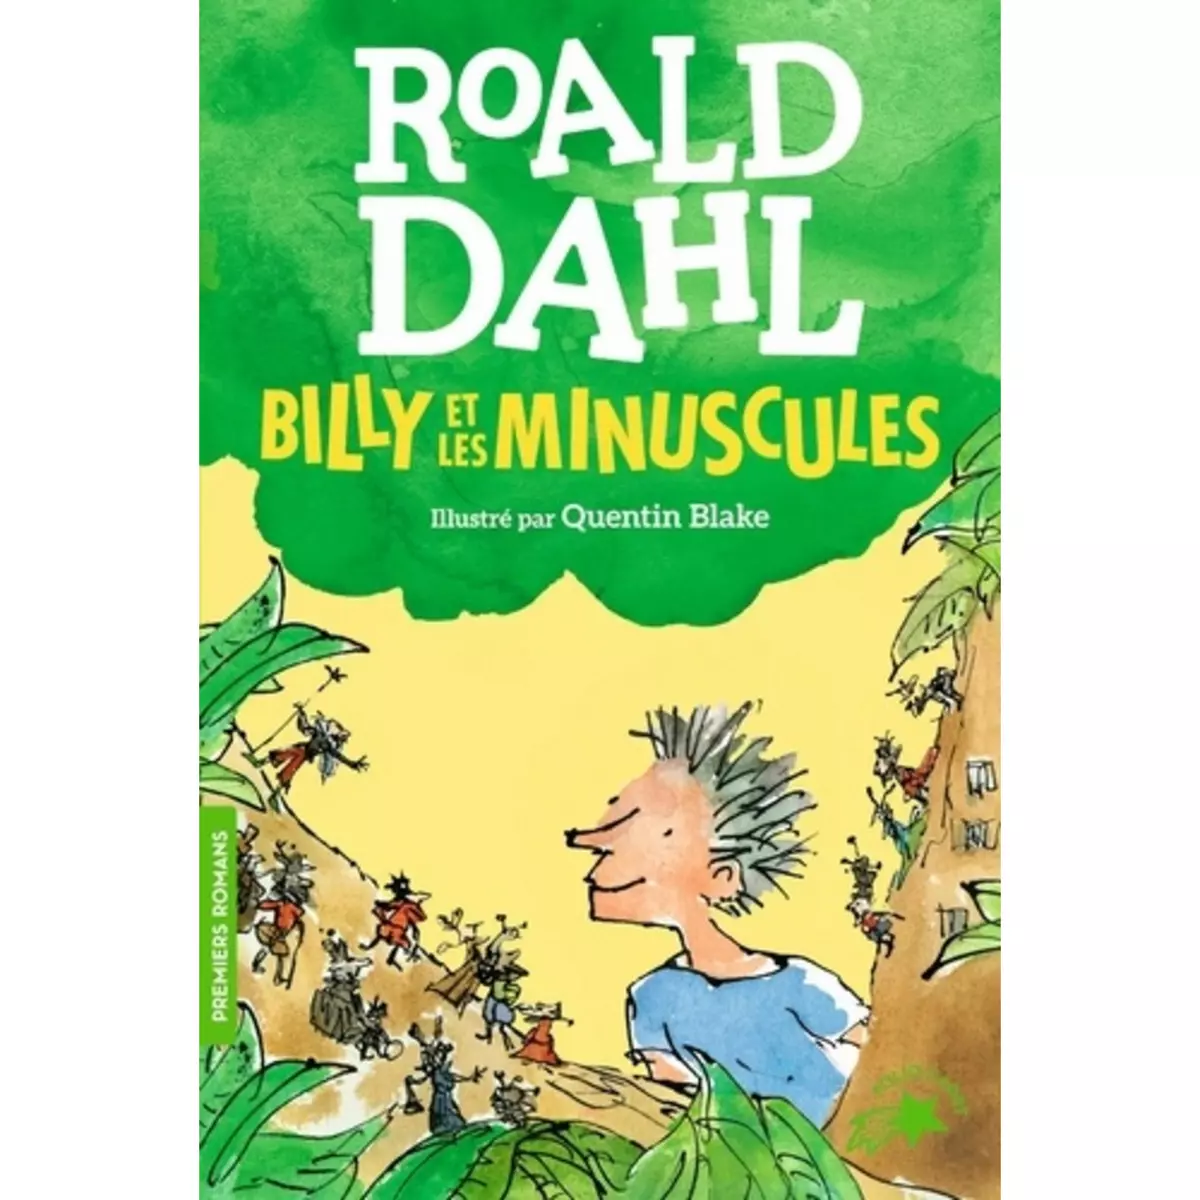  BILLY ET LES MINUSCULES, Dahl Roald